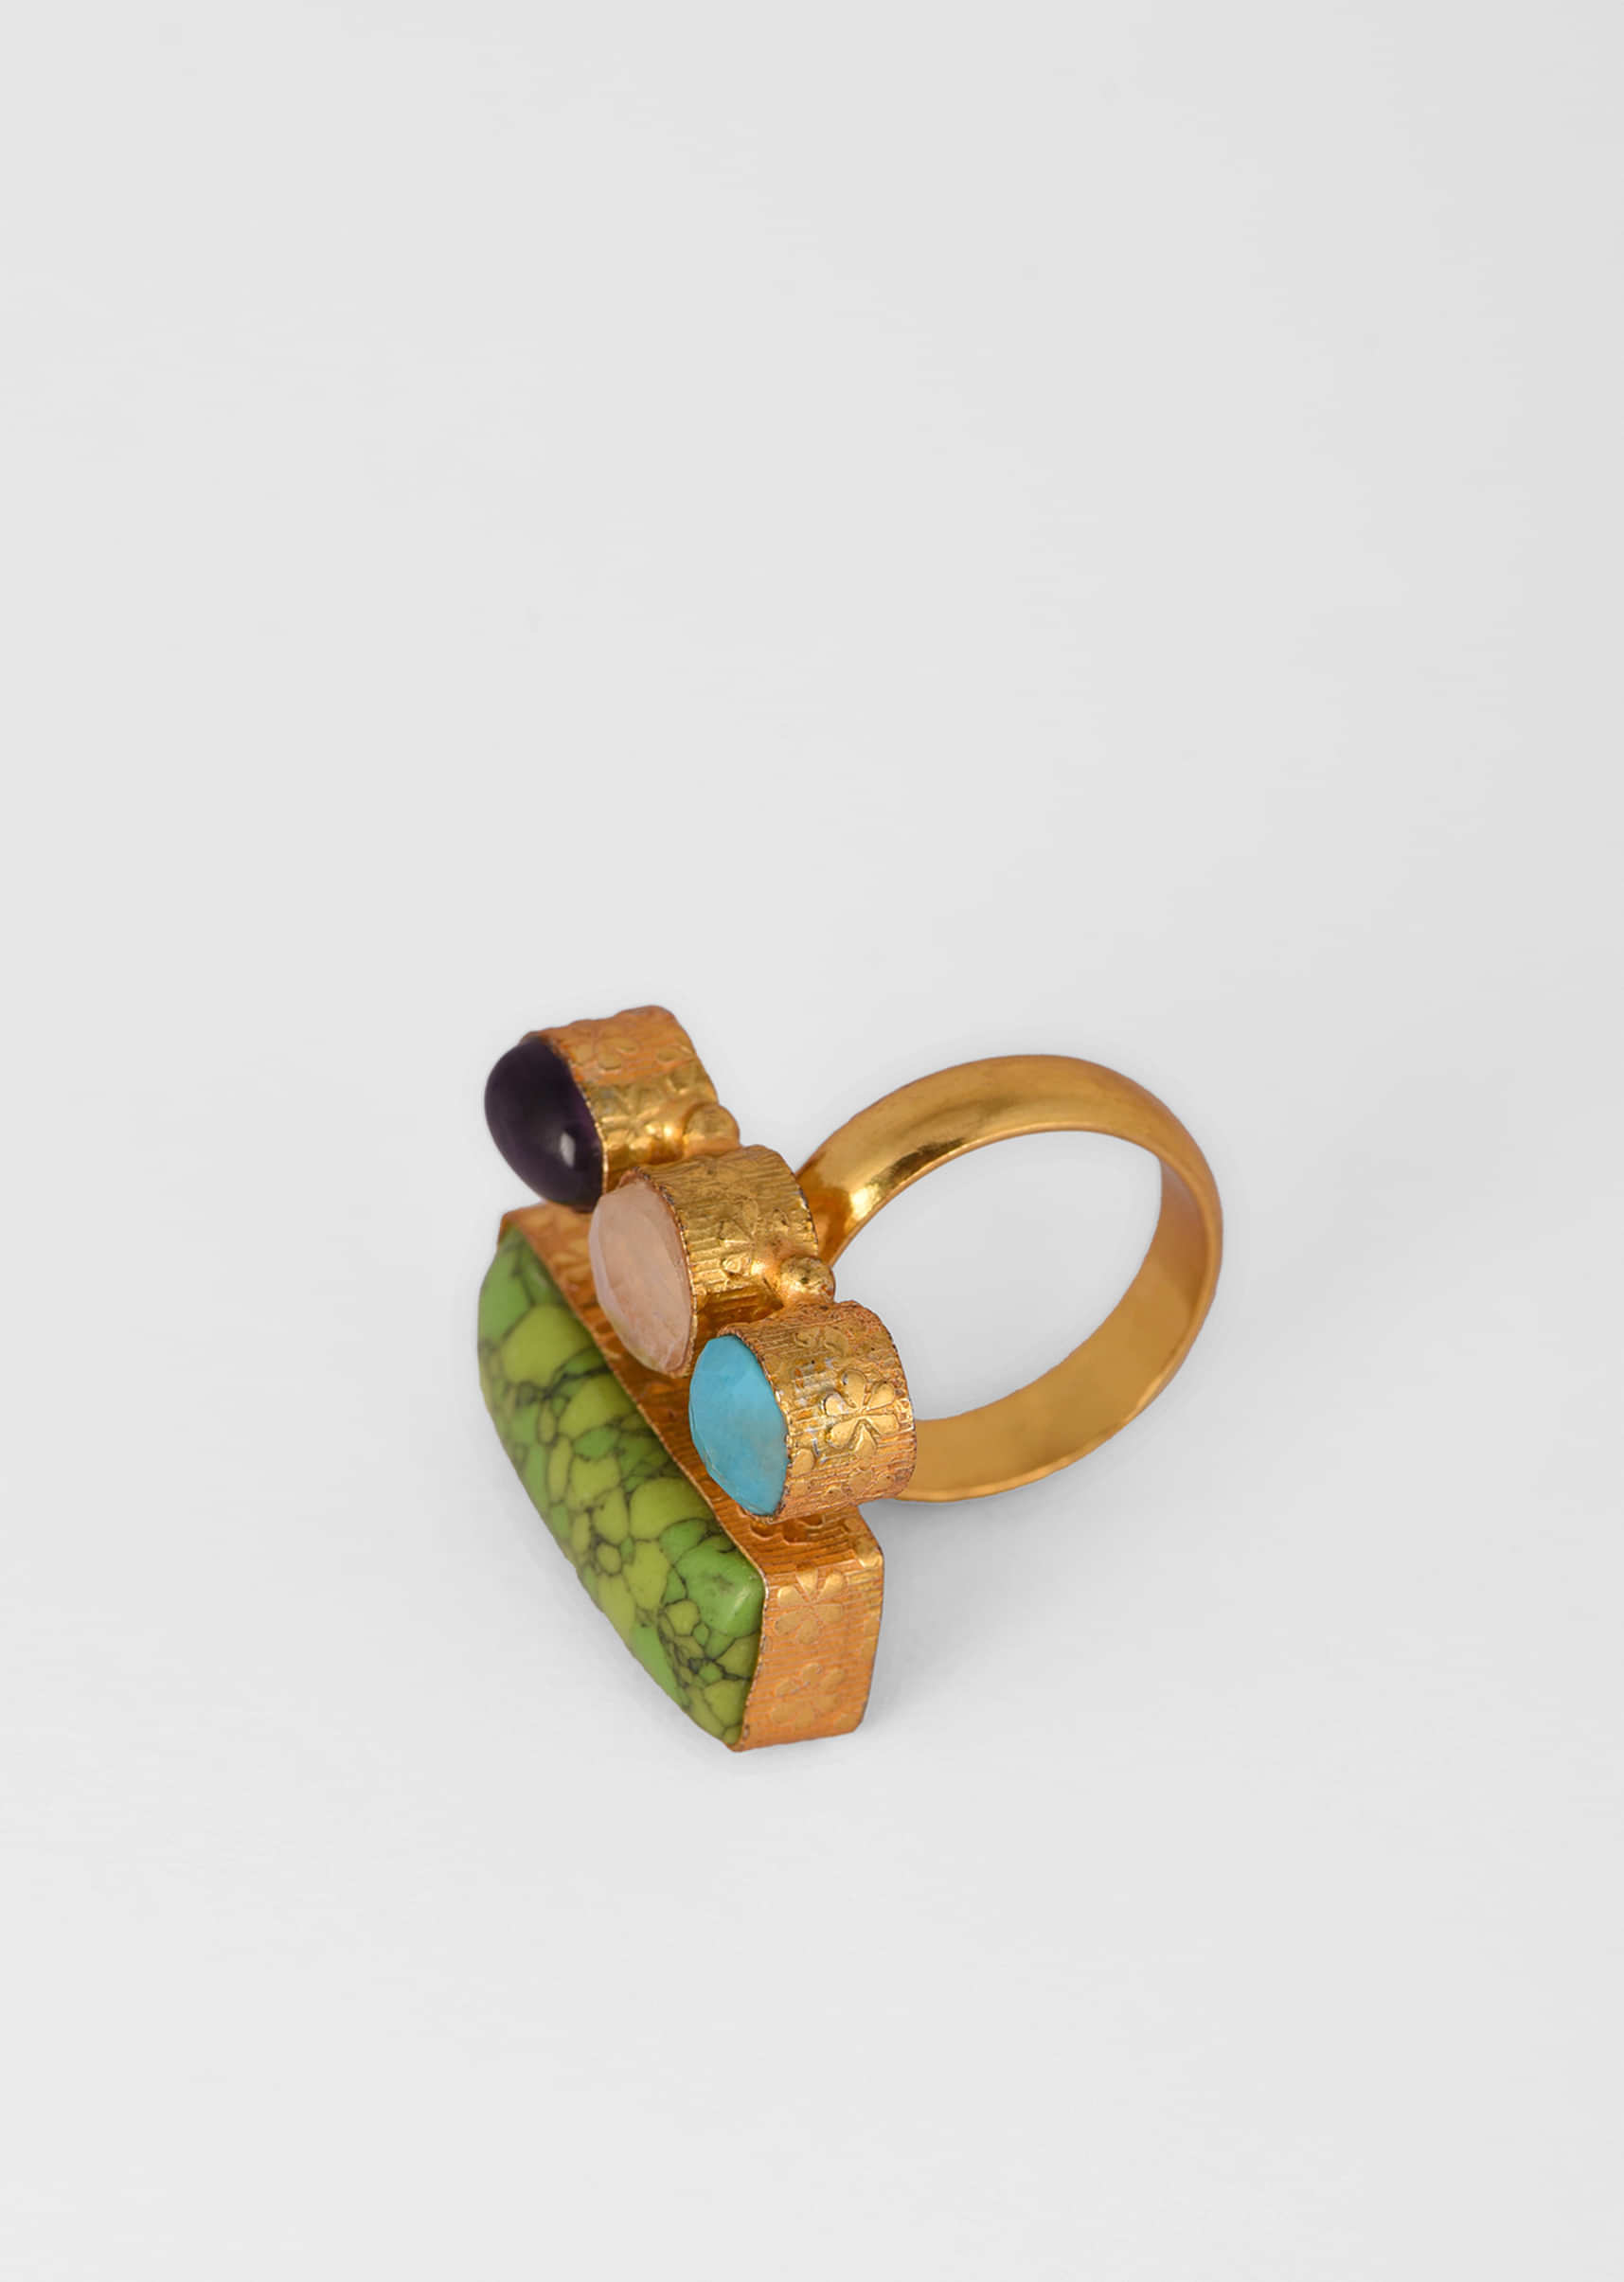 Multi Colored Ring With Semi Precious Stones In Green, Blue, White And Purple 